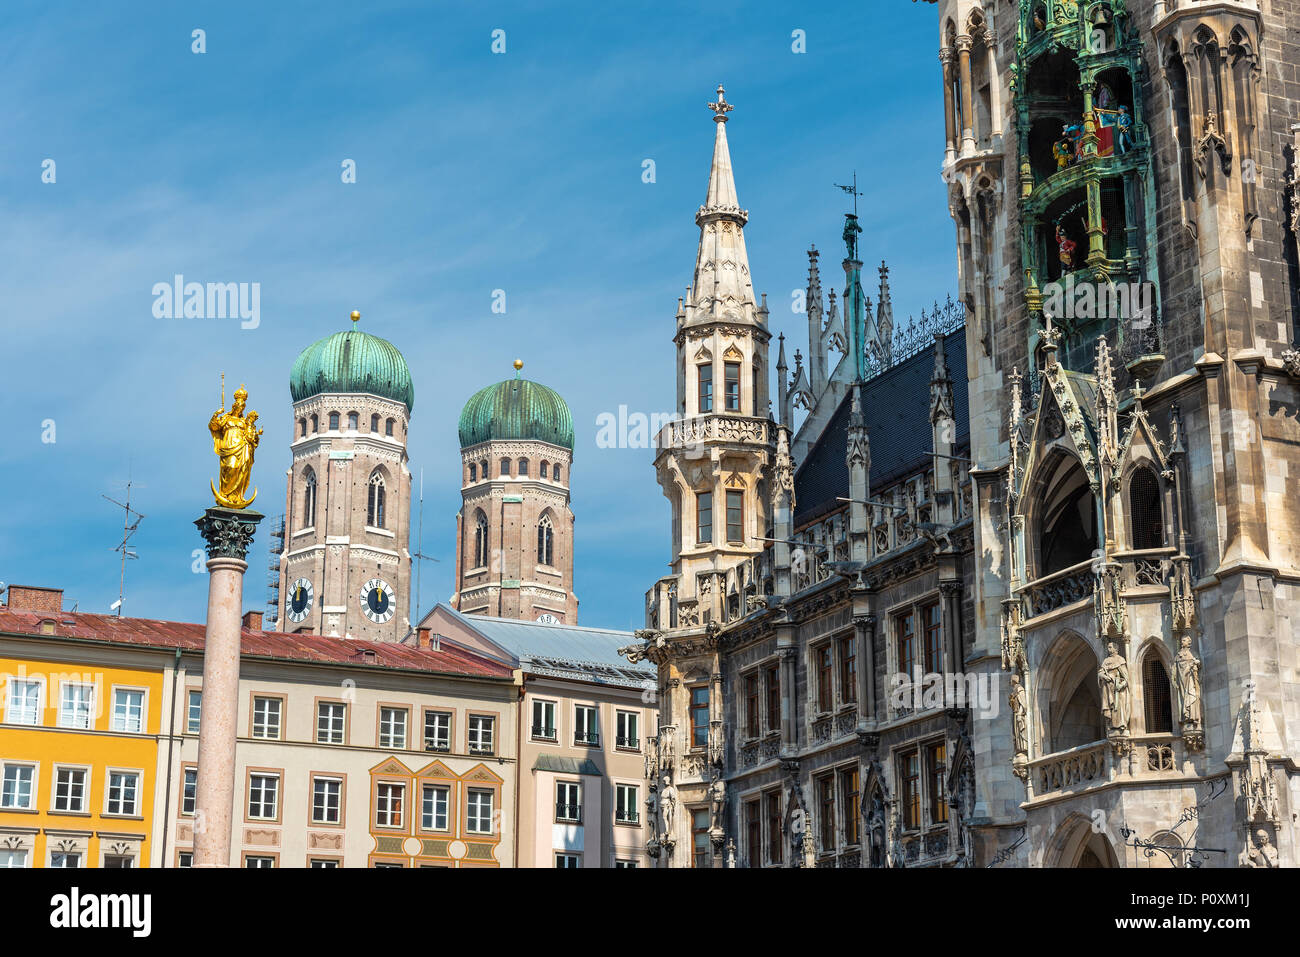 Vue détaillée de l'architecture à la Marienplatz à Munich, Allemagne Banque D'Images